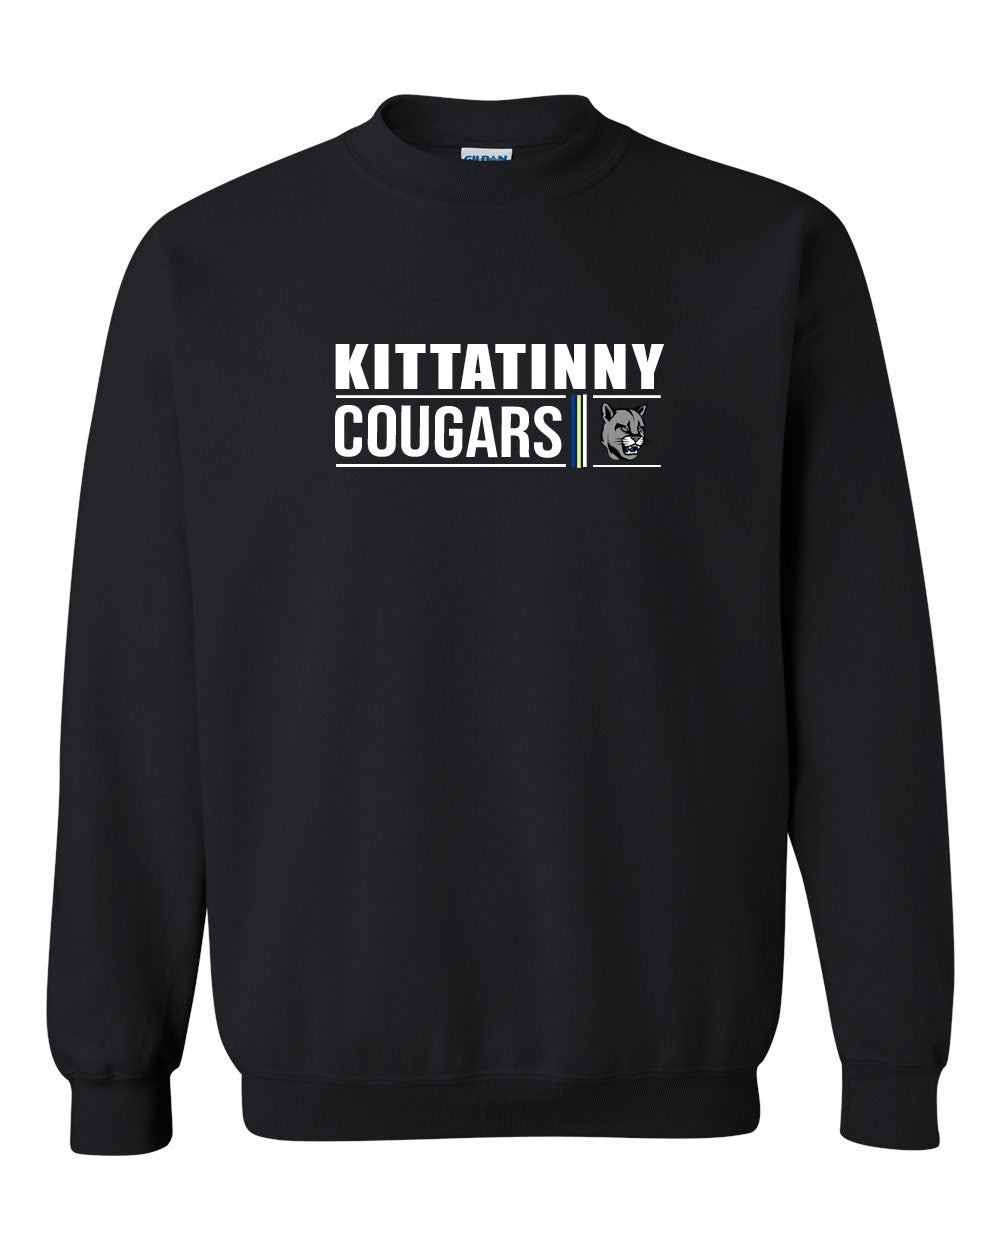 KRHS Design 7 non hooded sweatshirt